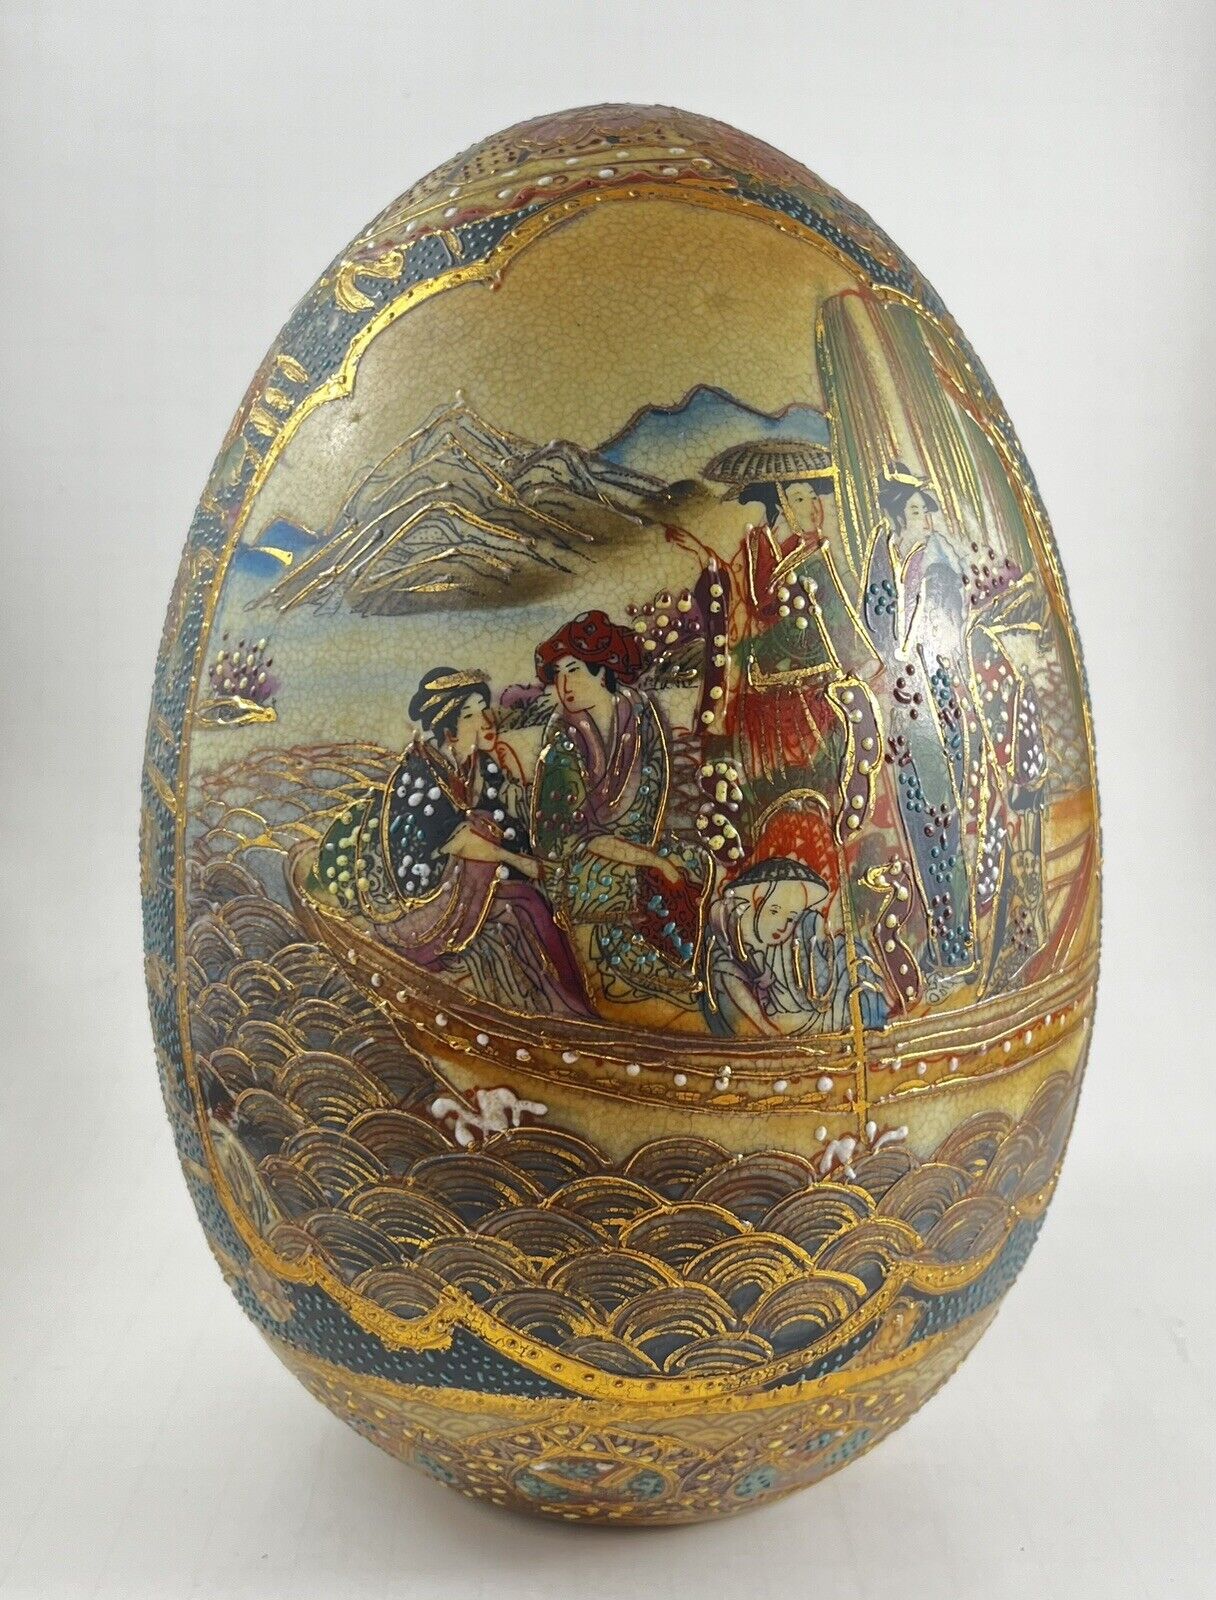 Unique Vintage Satsuma - Medium Size 8 Inch Ceramic Egg - Hand Painted